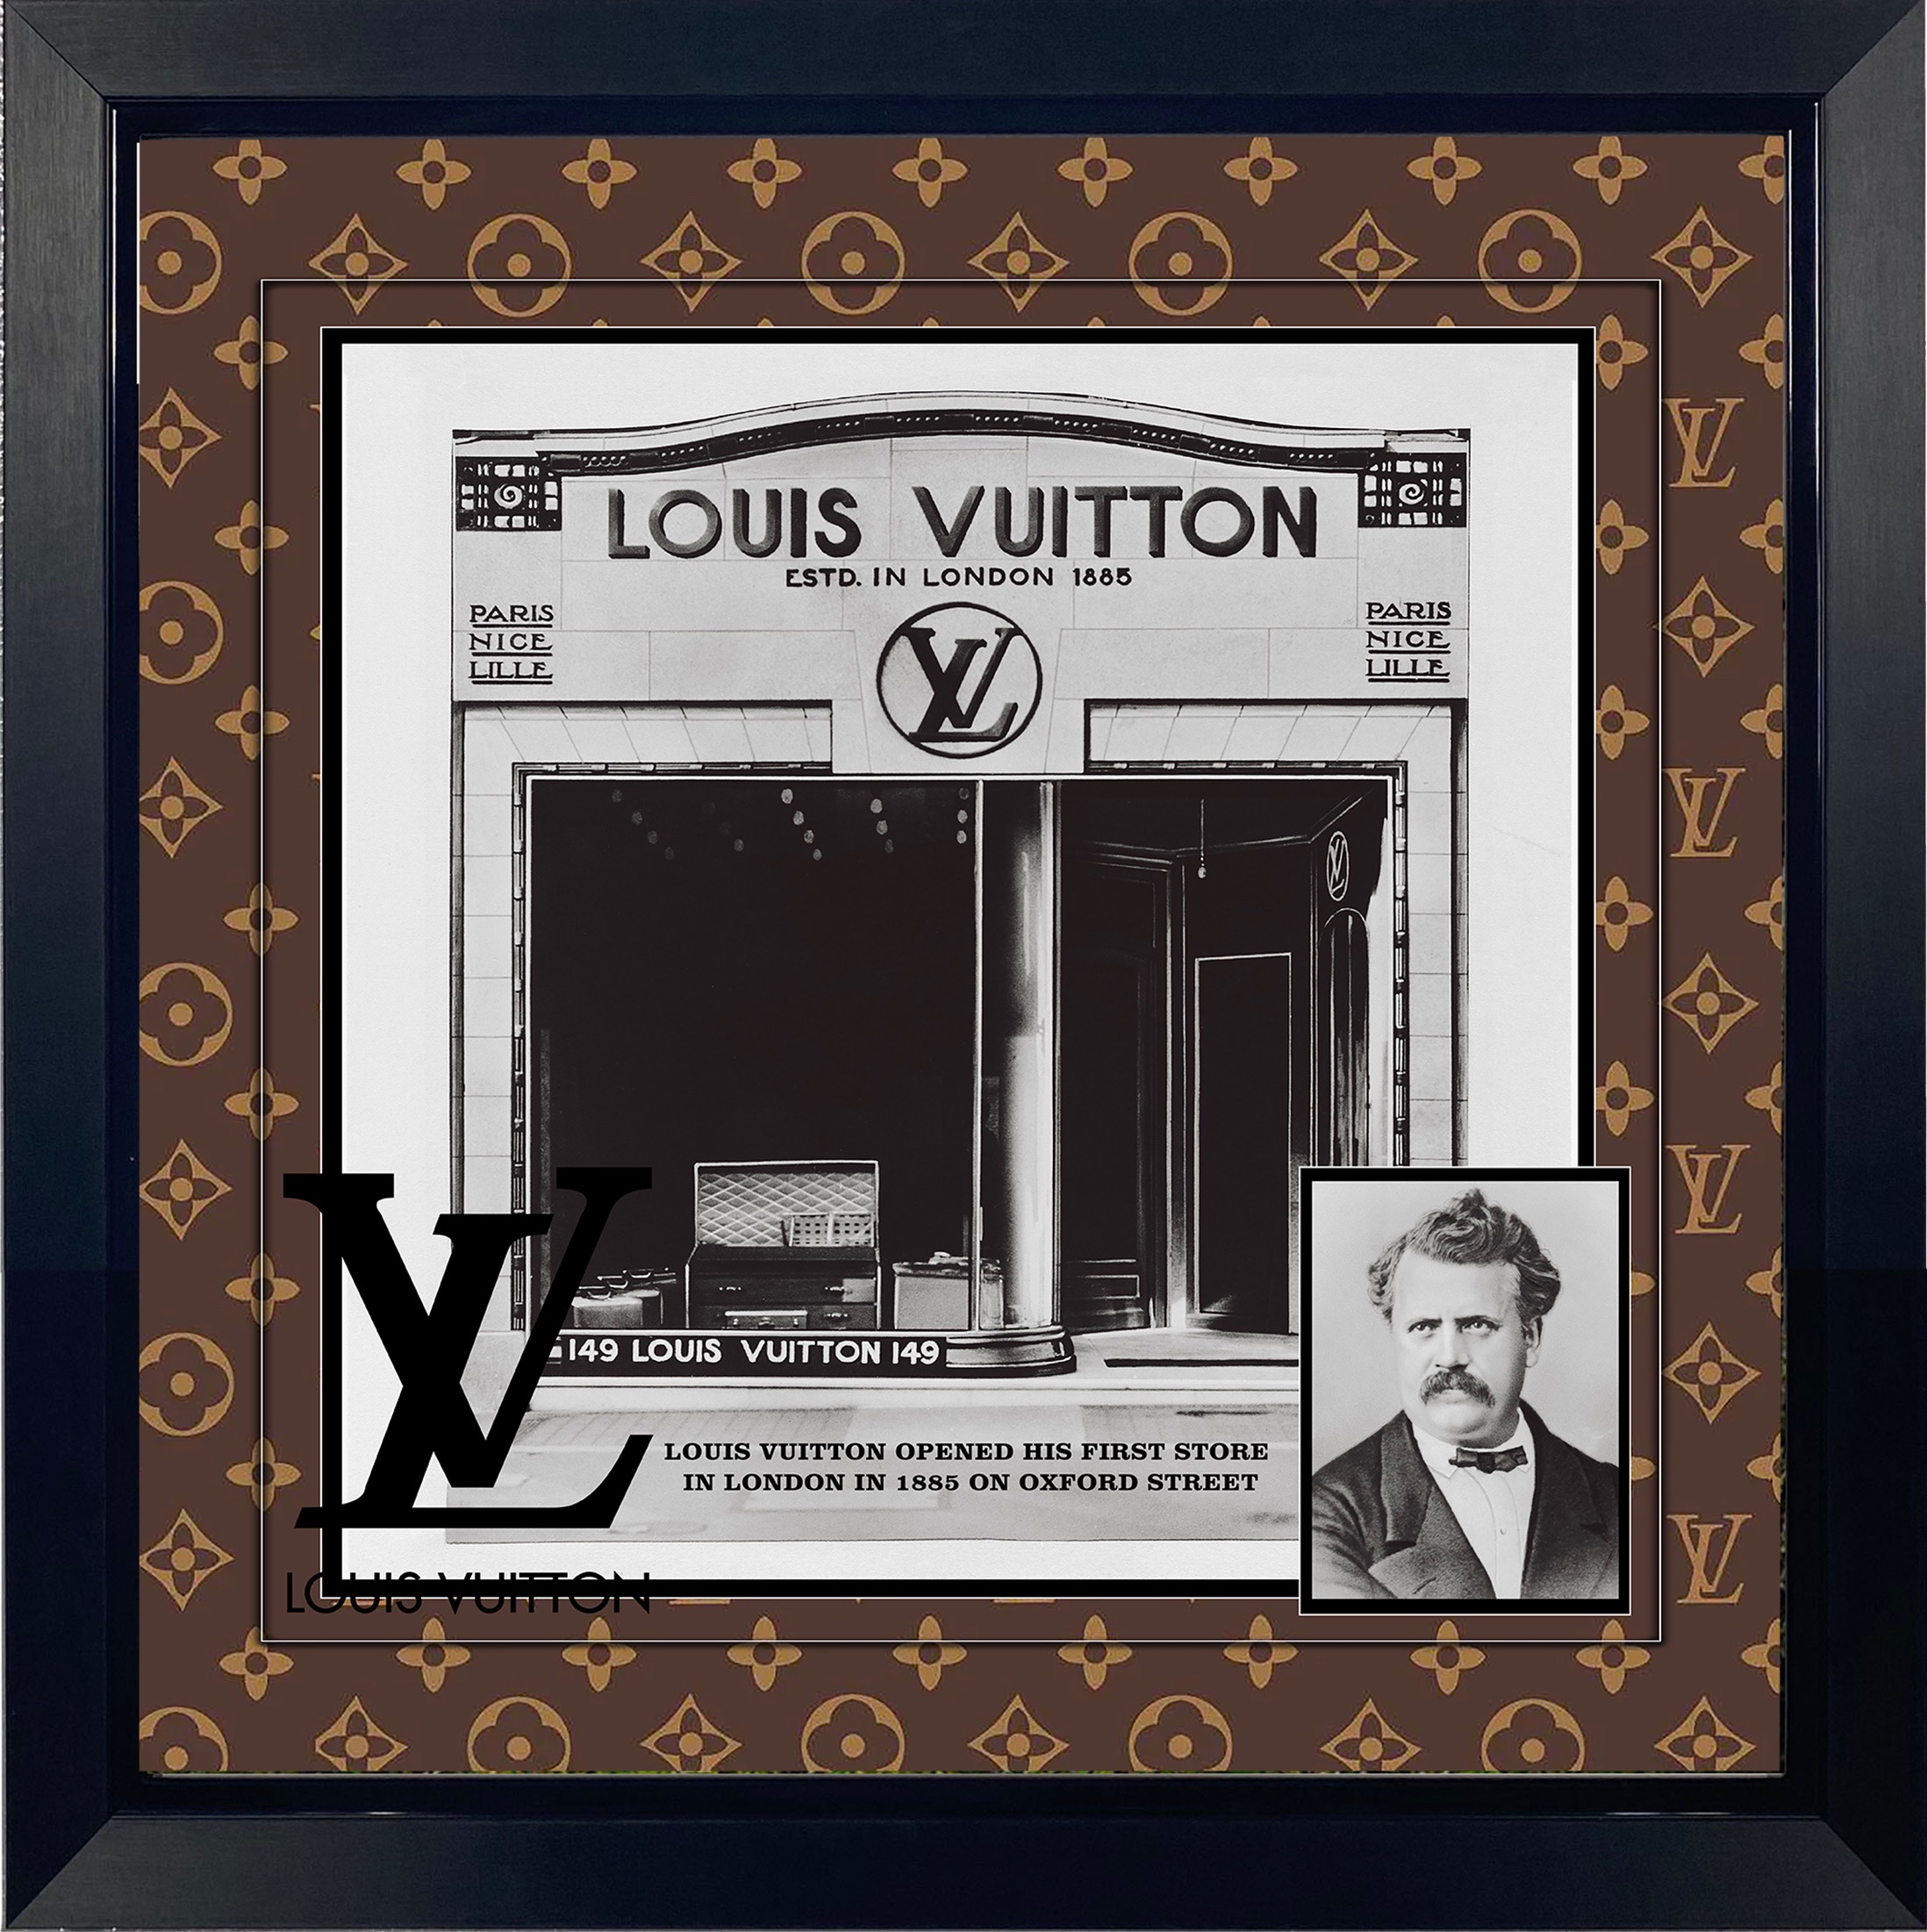 Louis Vuitton Art for Sale at Auction